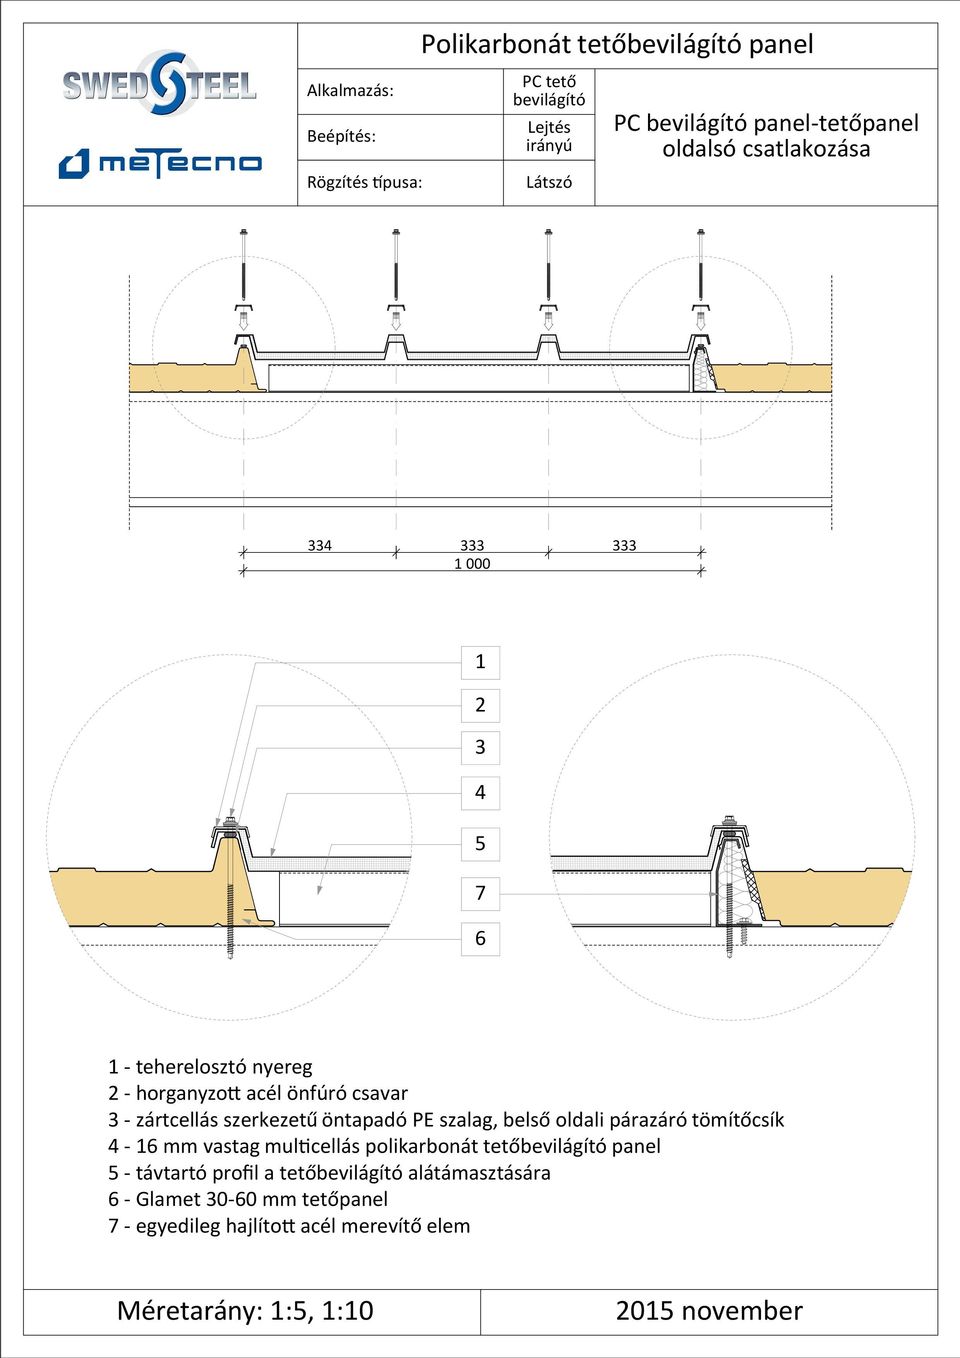 belső oldali párazáró tömítőcsík - mm vastag mul cellás polikarbonát tetőbevilágító panel - távtartó profil a